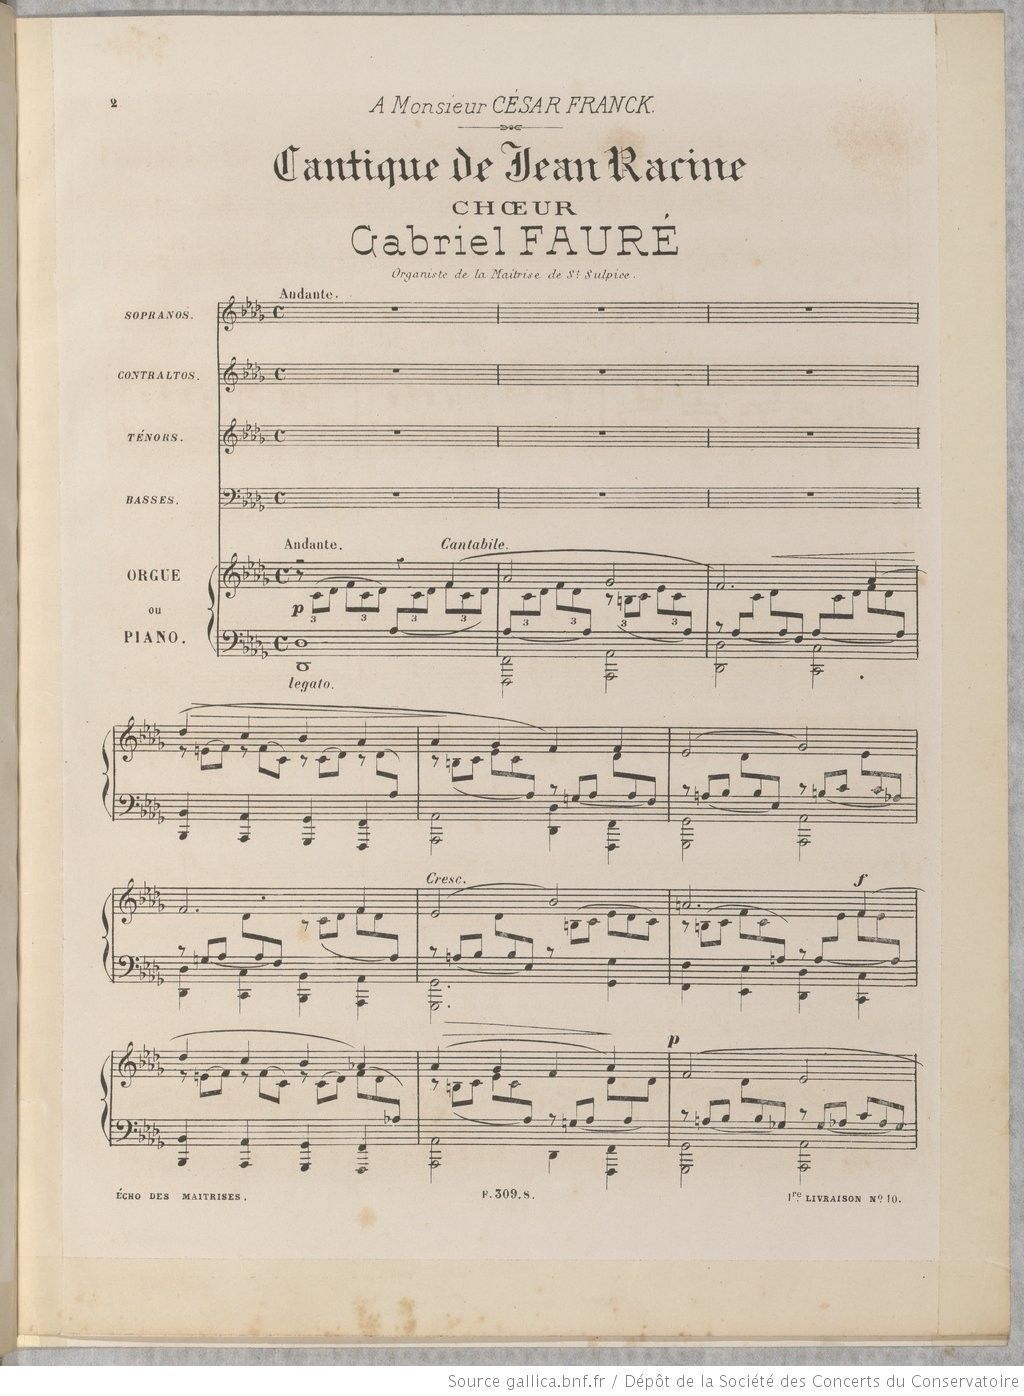 Cantique de Jean Racine, Gabriel Fauré, F. Schoen, 1876, BnF